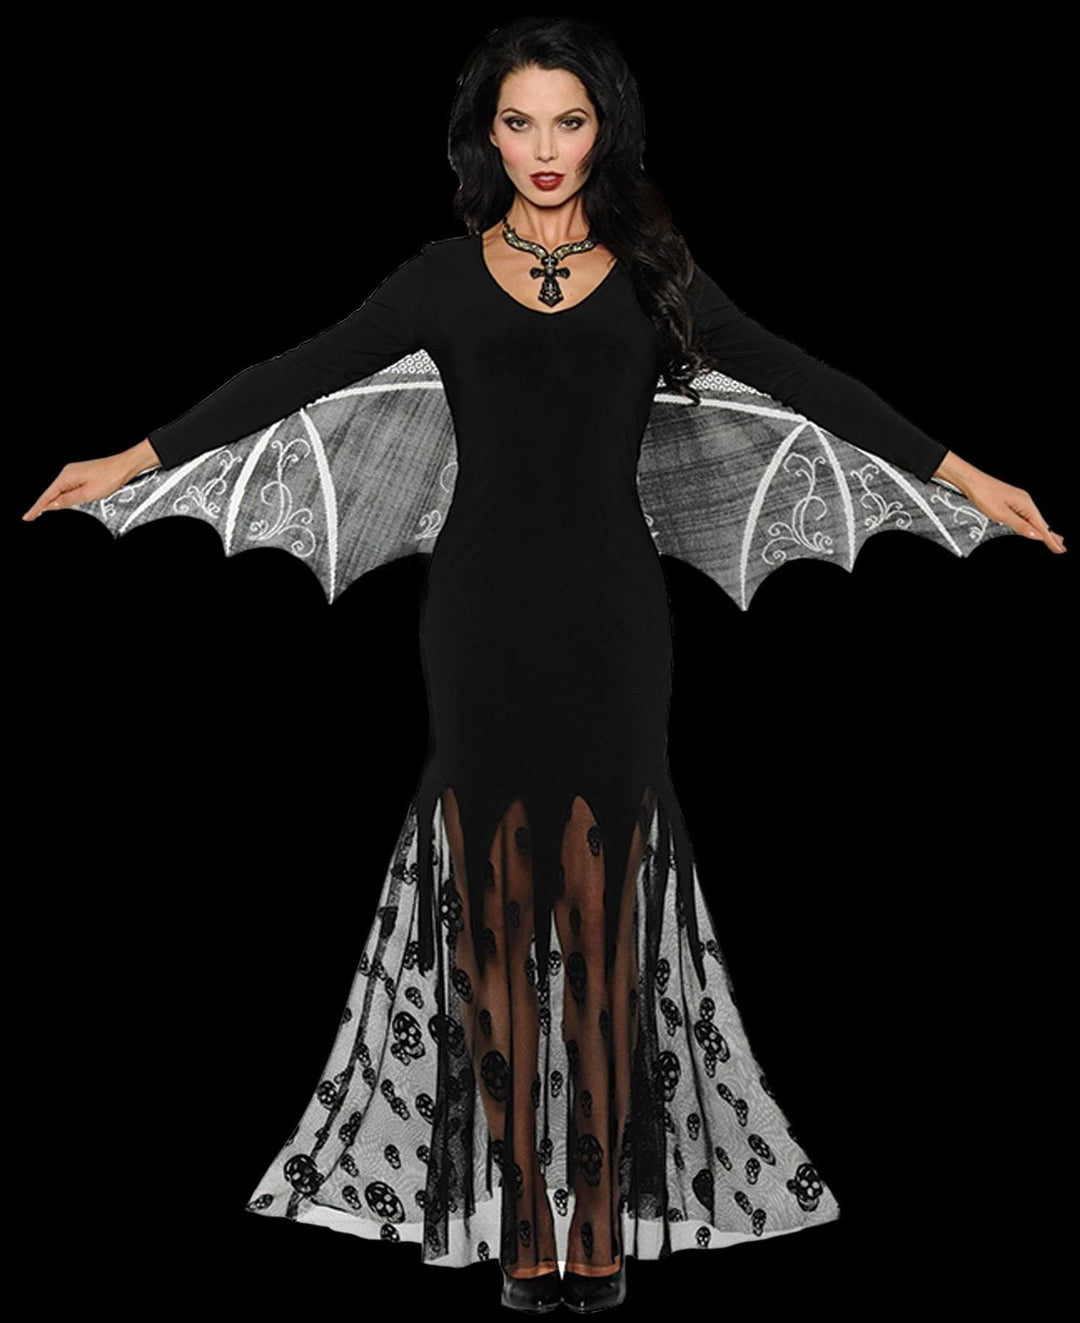 "Vampiress" Women's Halloween Costume - Adult